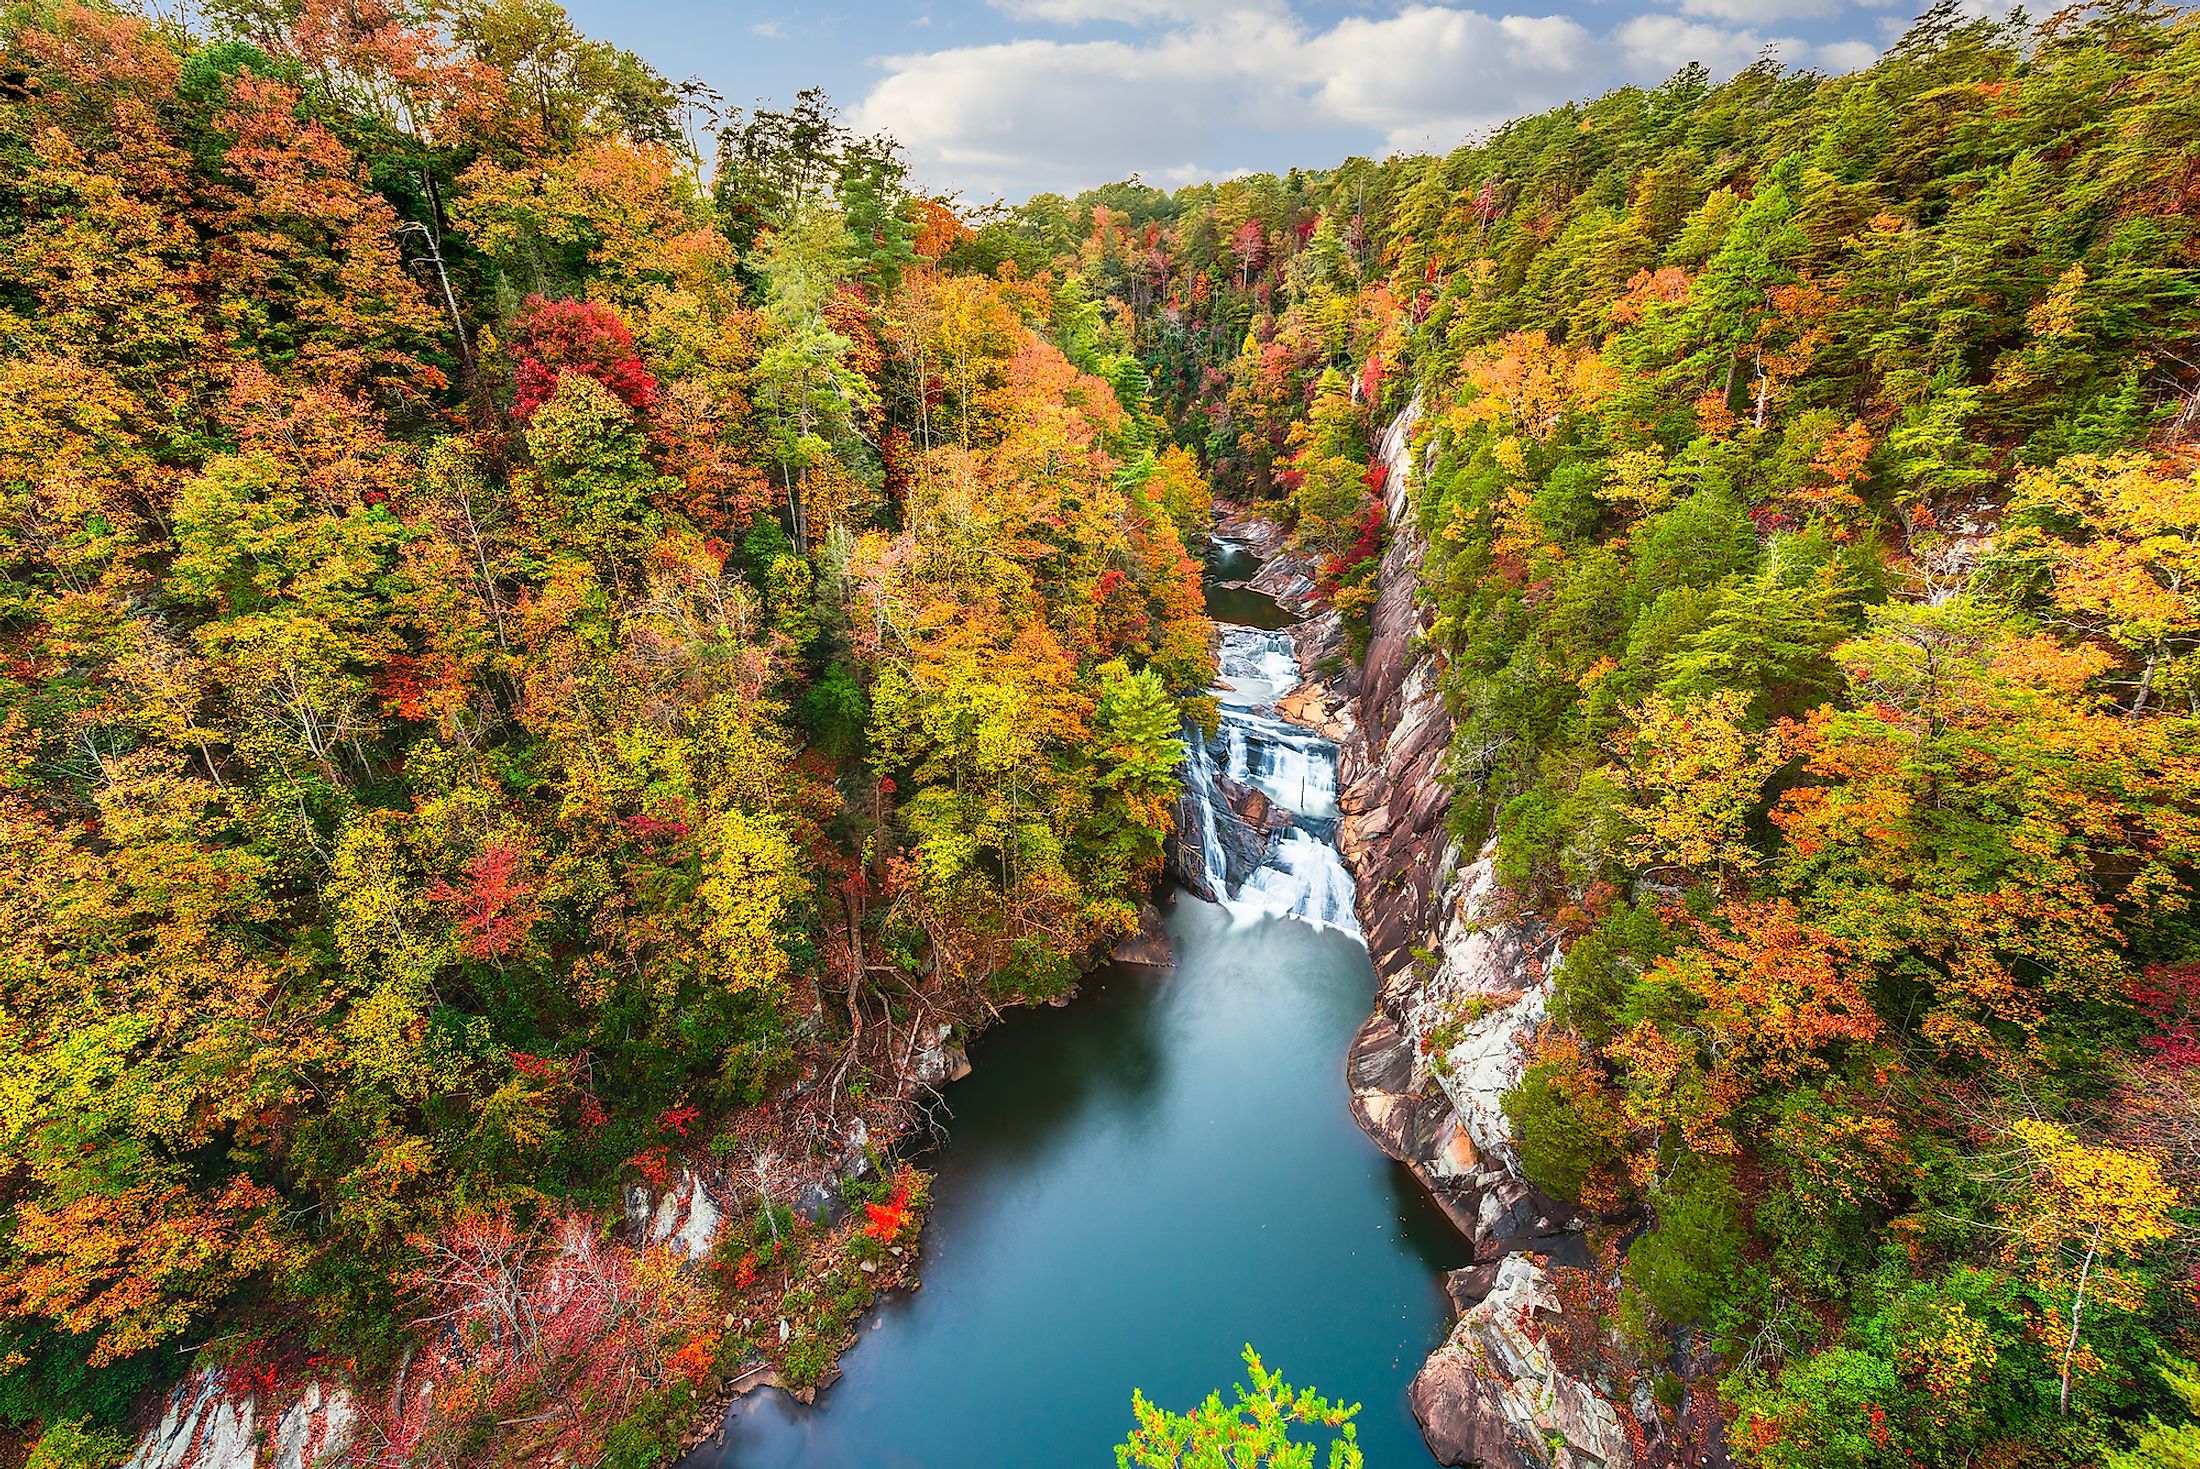 Tallulah Falls, Georgia